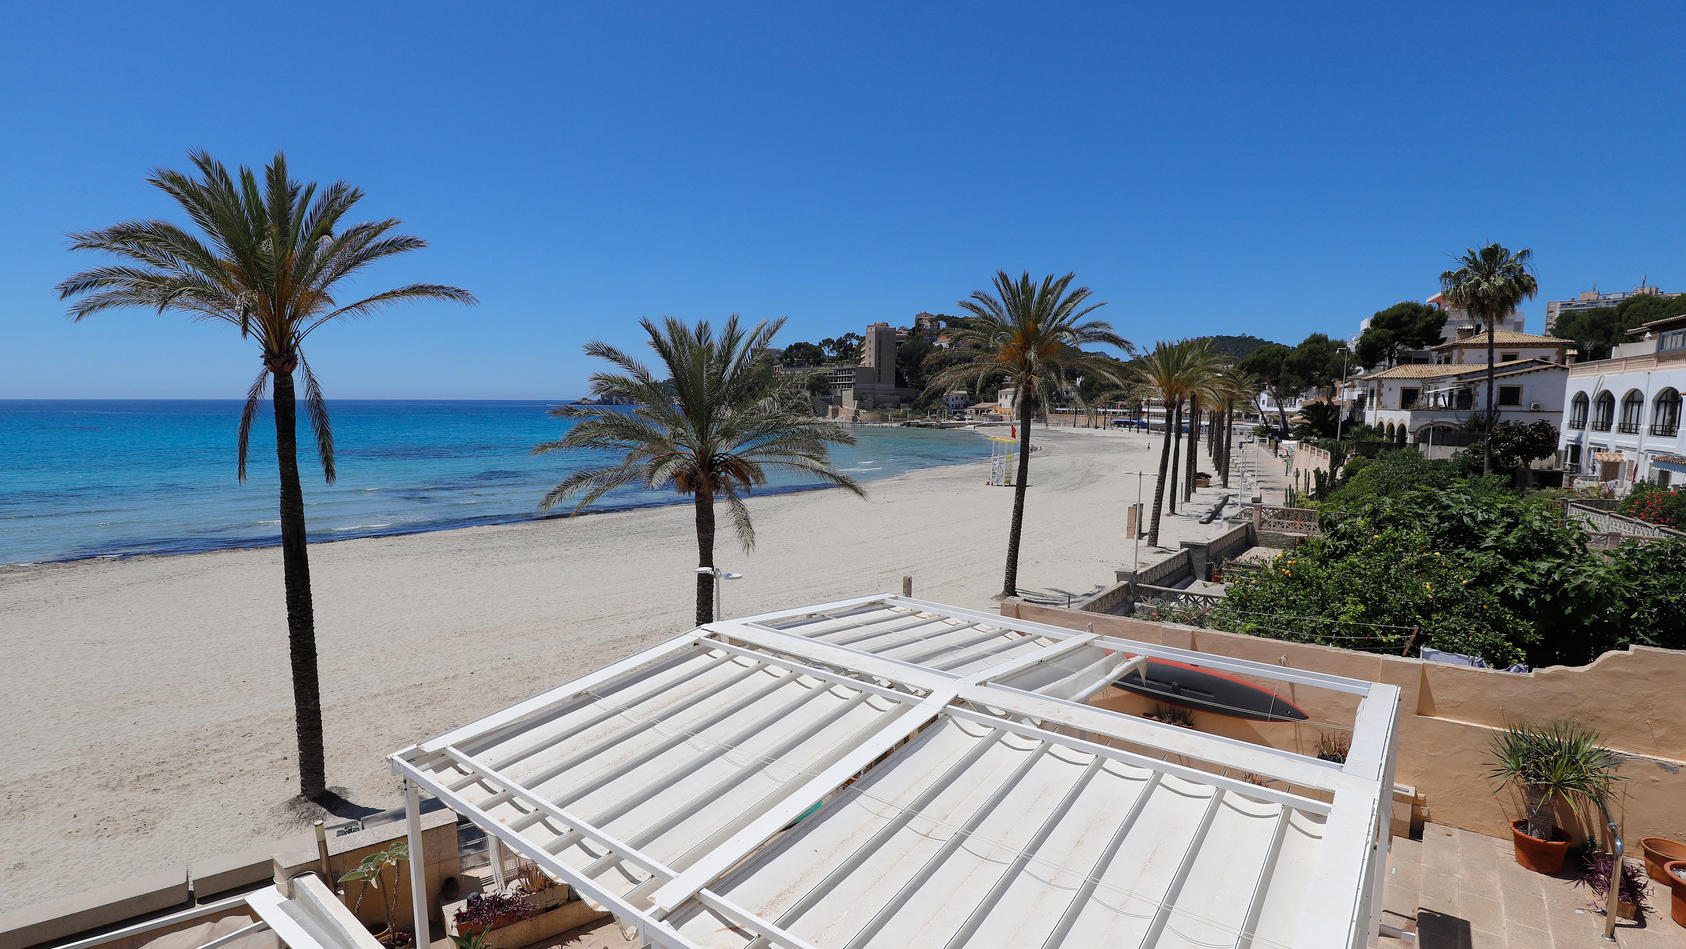 20.05.2020, Spanien, Calvia: Der Strand von Paguera auf der spanischen Insel Mallorca ist leer. Einige spanische Provinzen dürfen in einer ersten Phase seit Ausbruch der Coronavirus (COVID-19) erste Sperrmaßnahmen lockern. Foto: Clara Margais/dpa +++